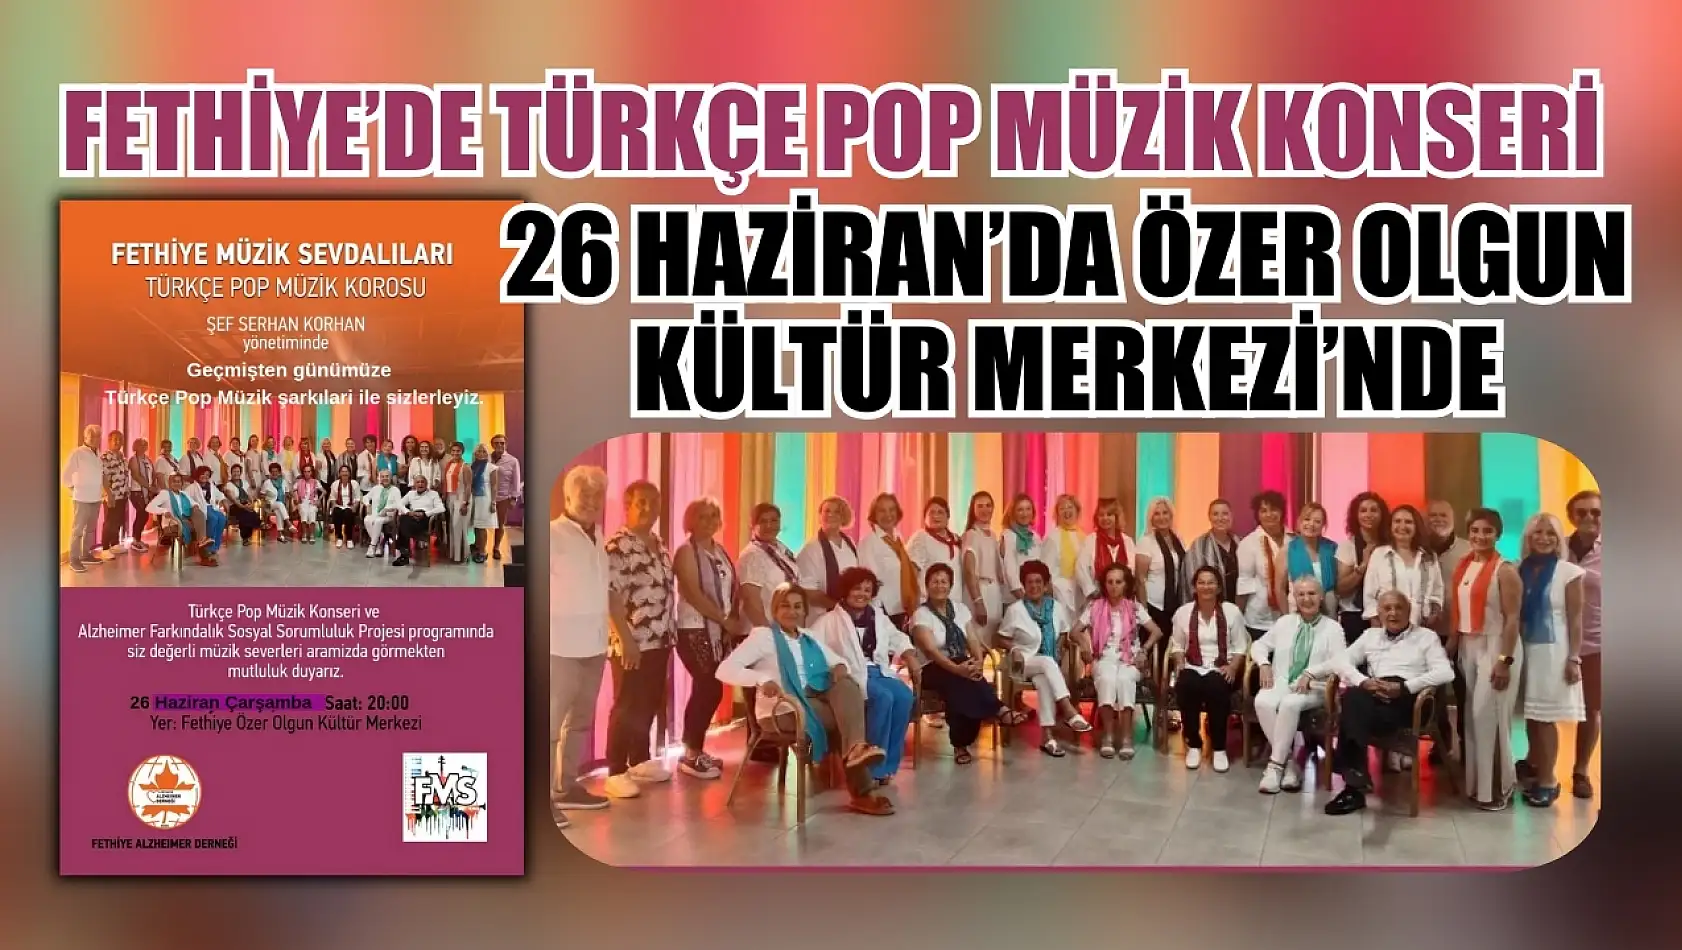 Fethiye'de Türkçe Pop Müzik Konseri 26 Haziran'da Özer Olgun Kültür Merkezi'nde